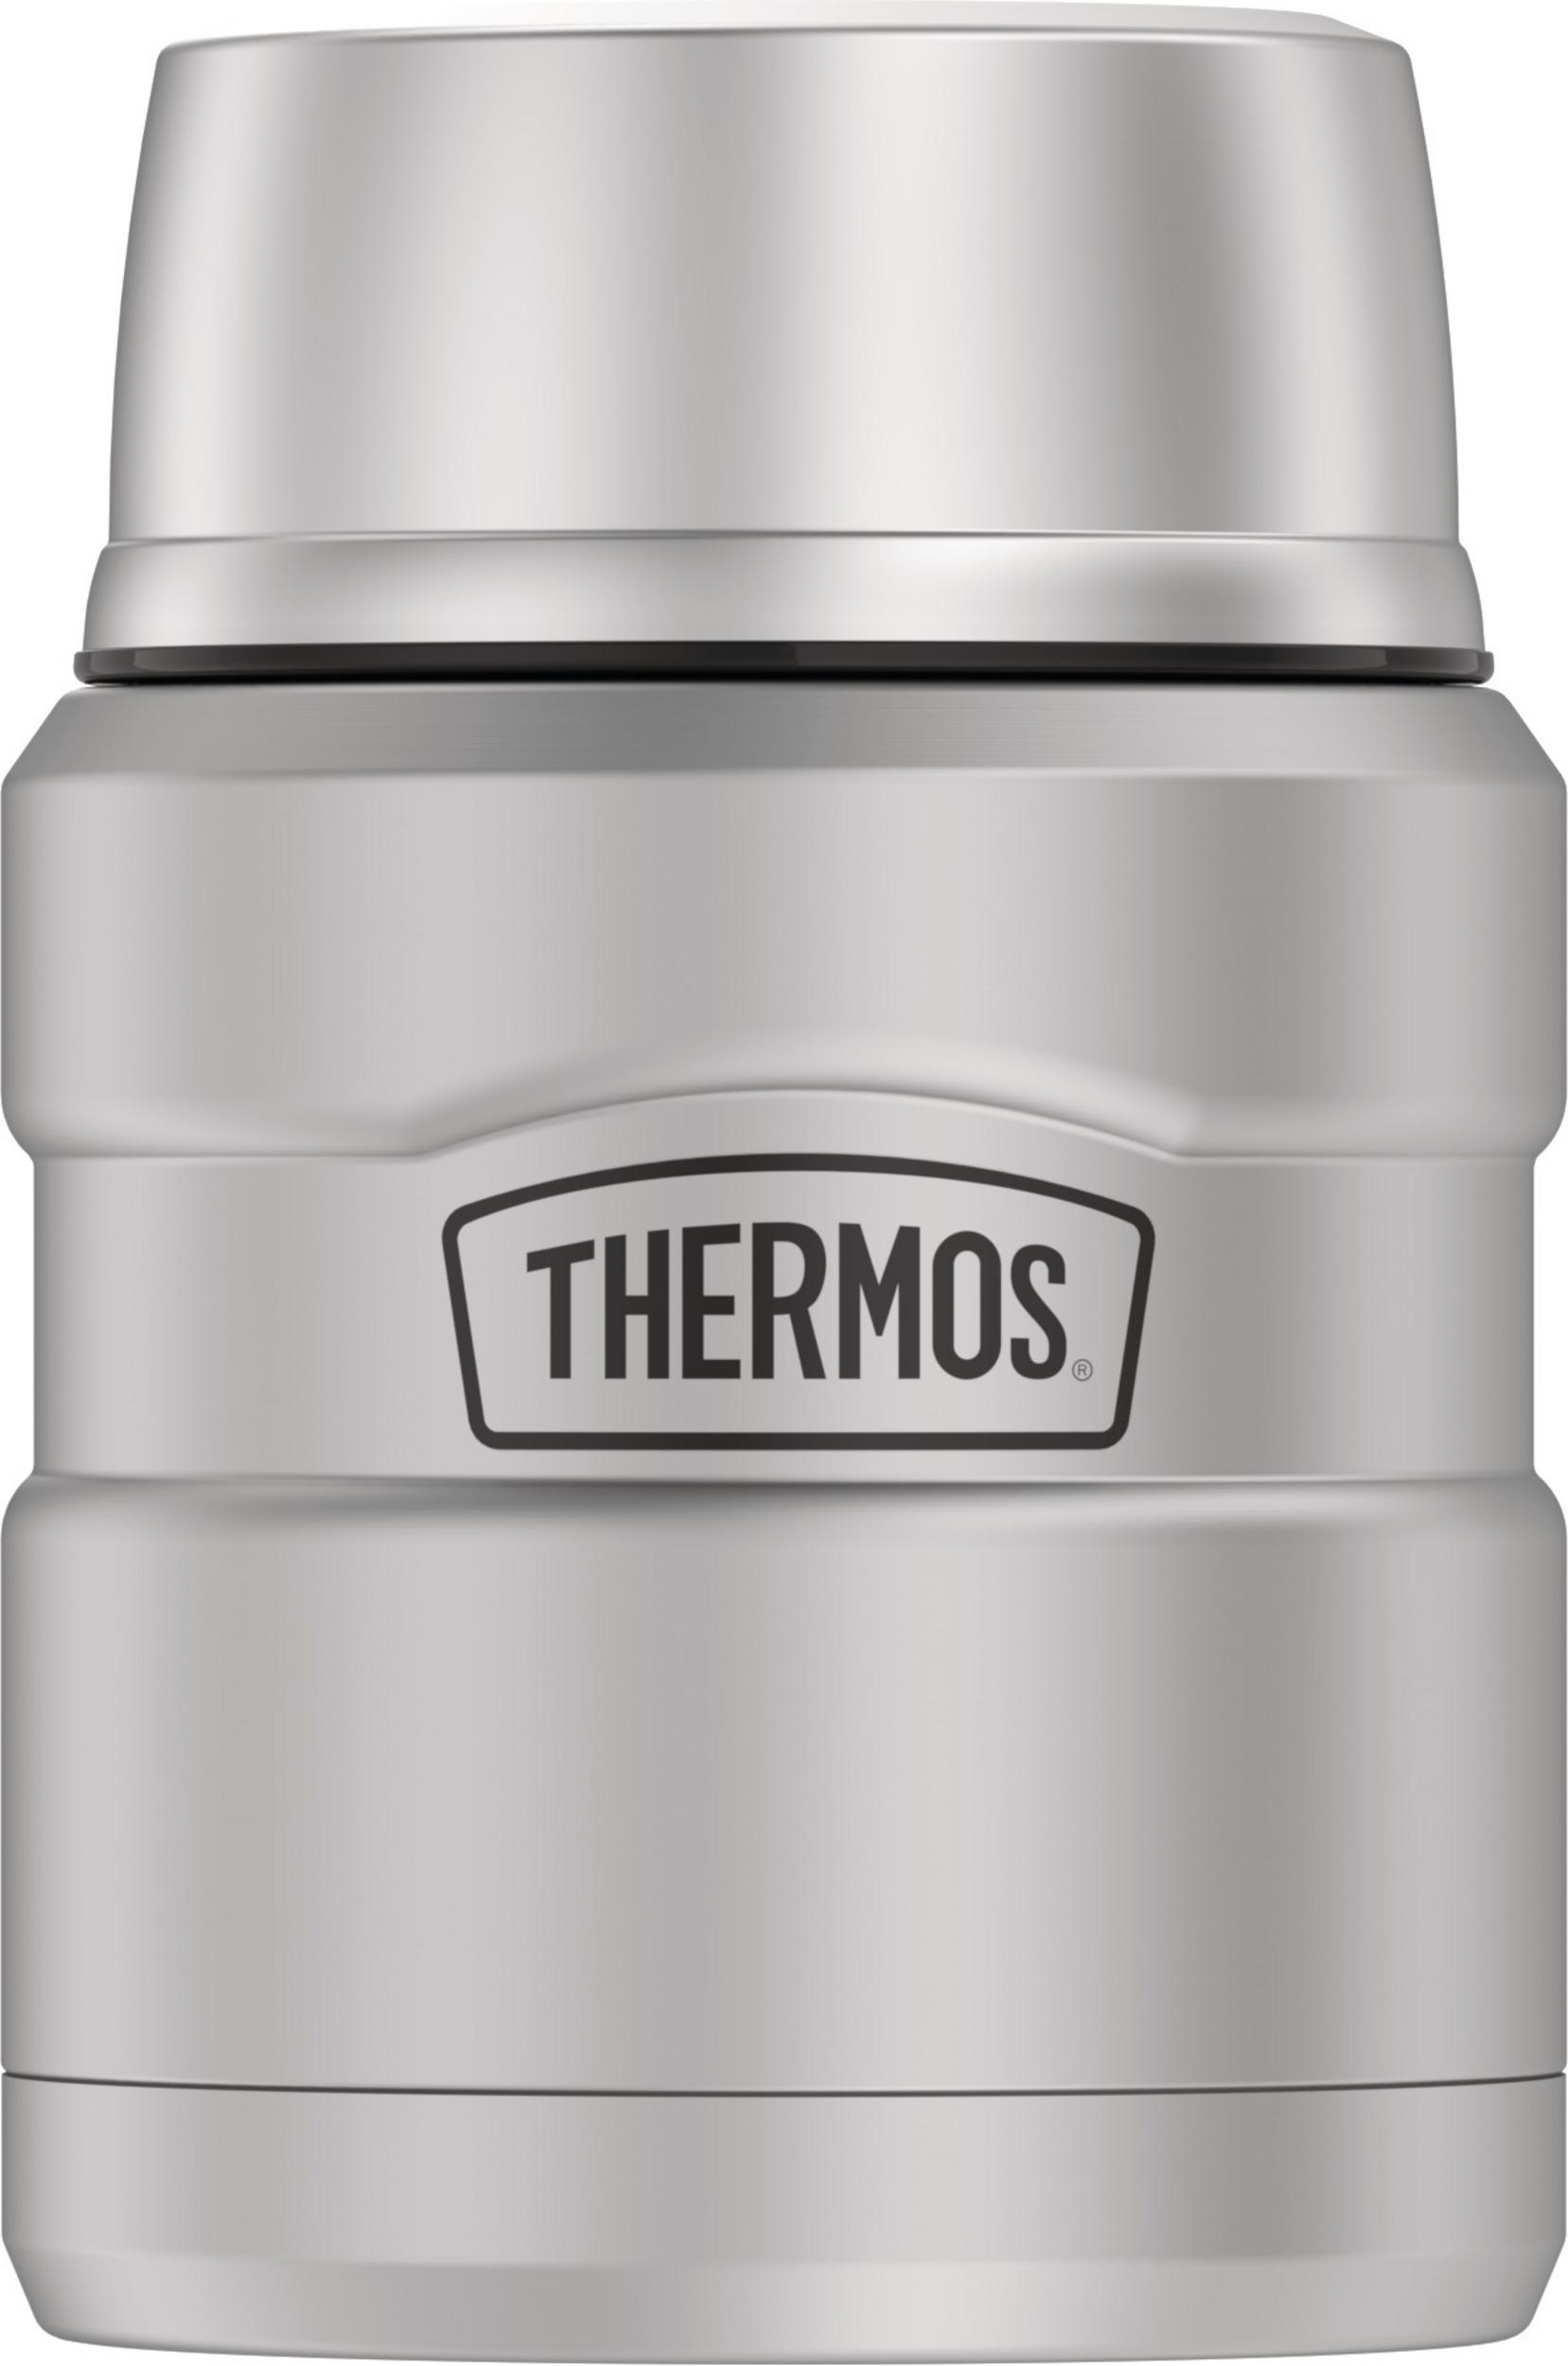 Contenant à aliments en acier inoxydable avec cuillère pliante - 470 ml Inox   - Thermos - Boîte à repas - SK3000MS4C